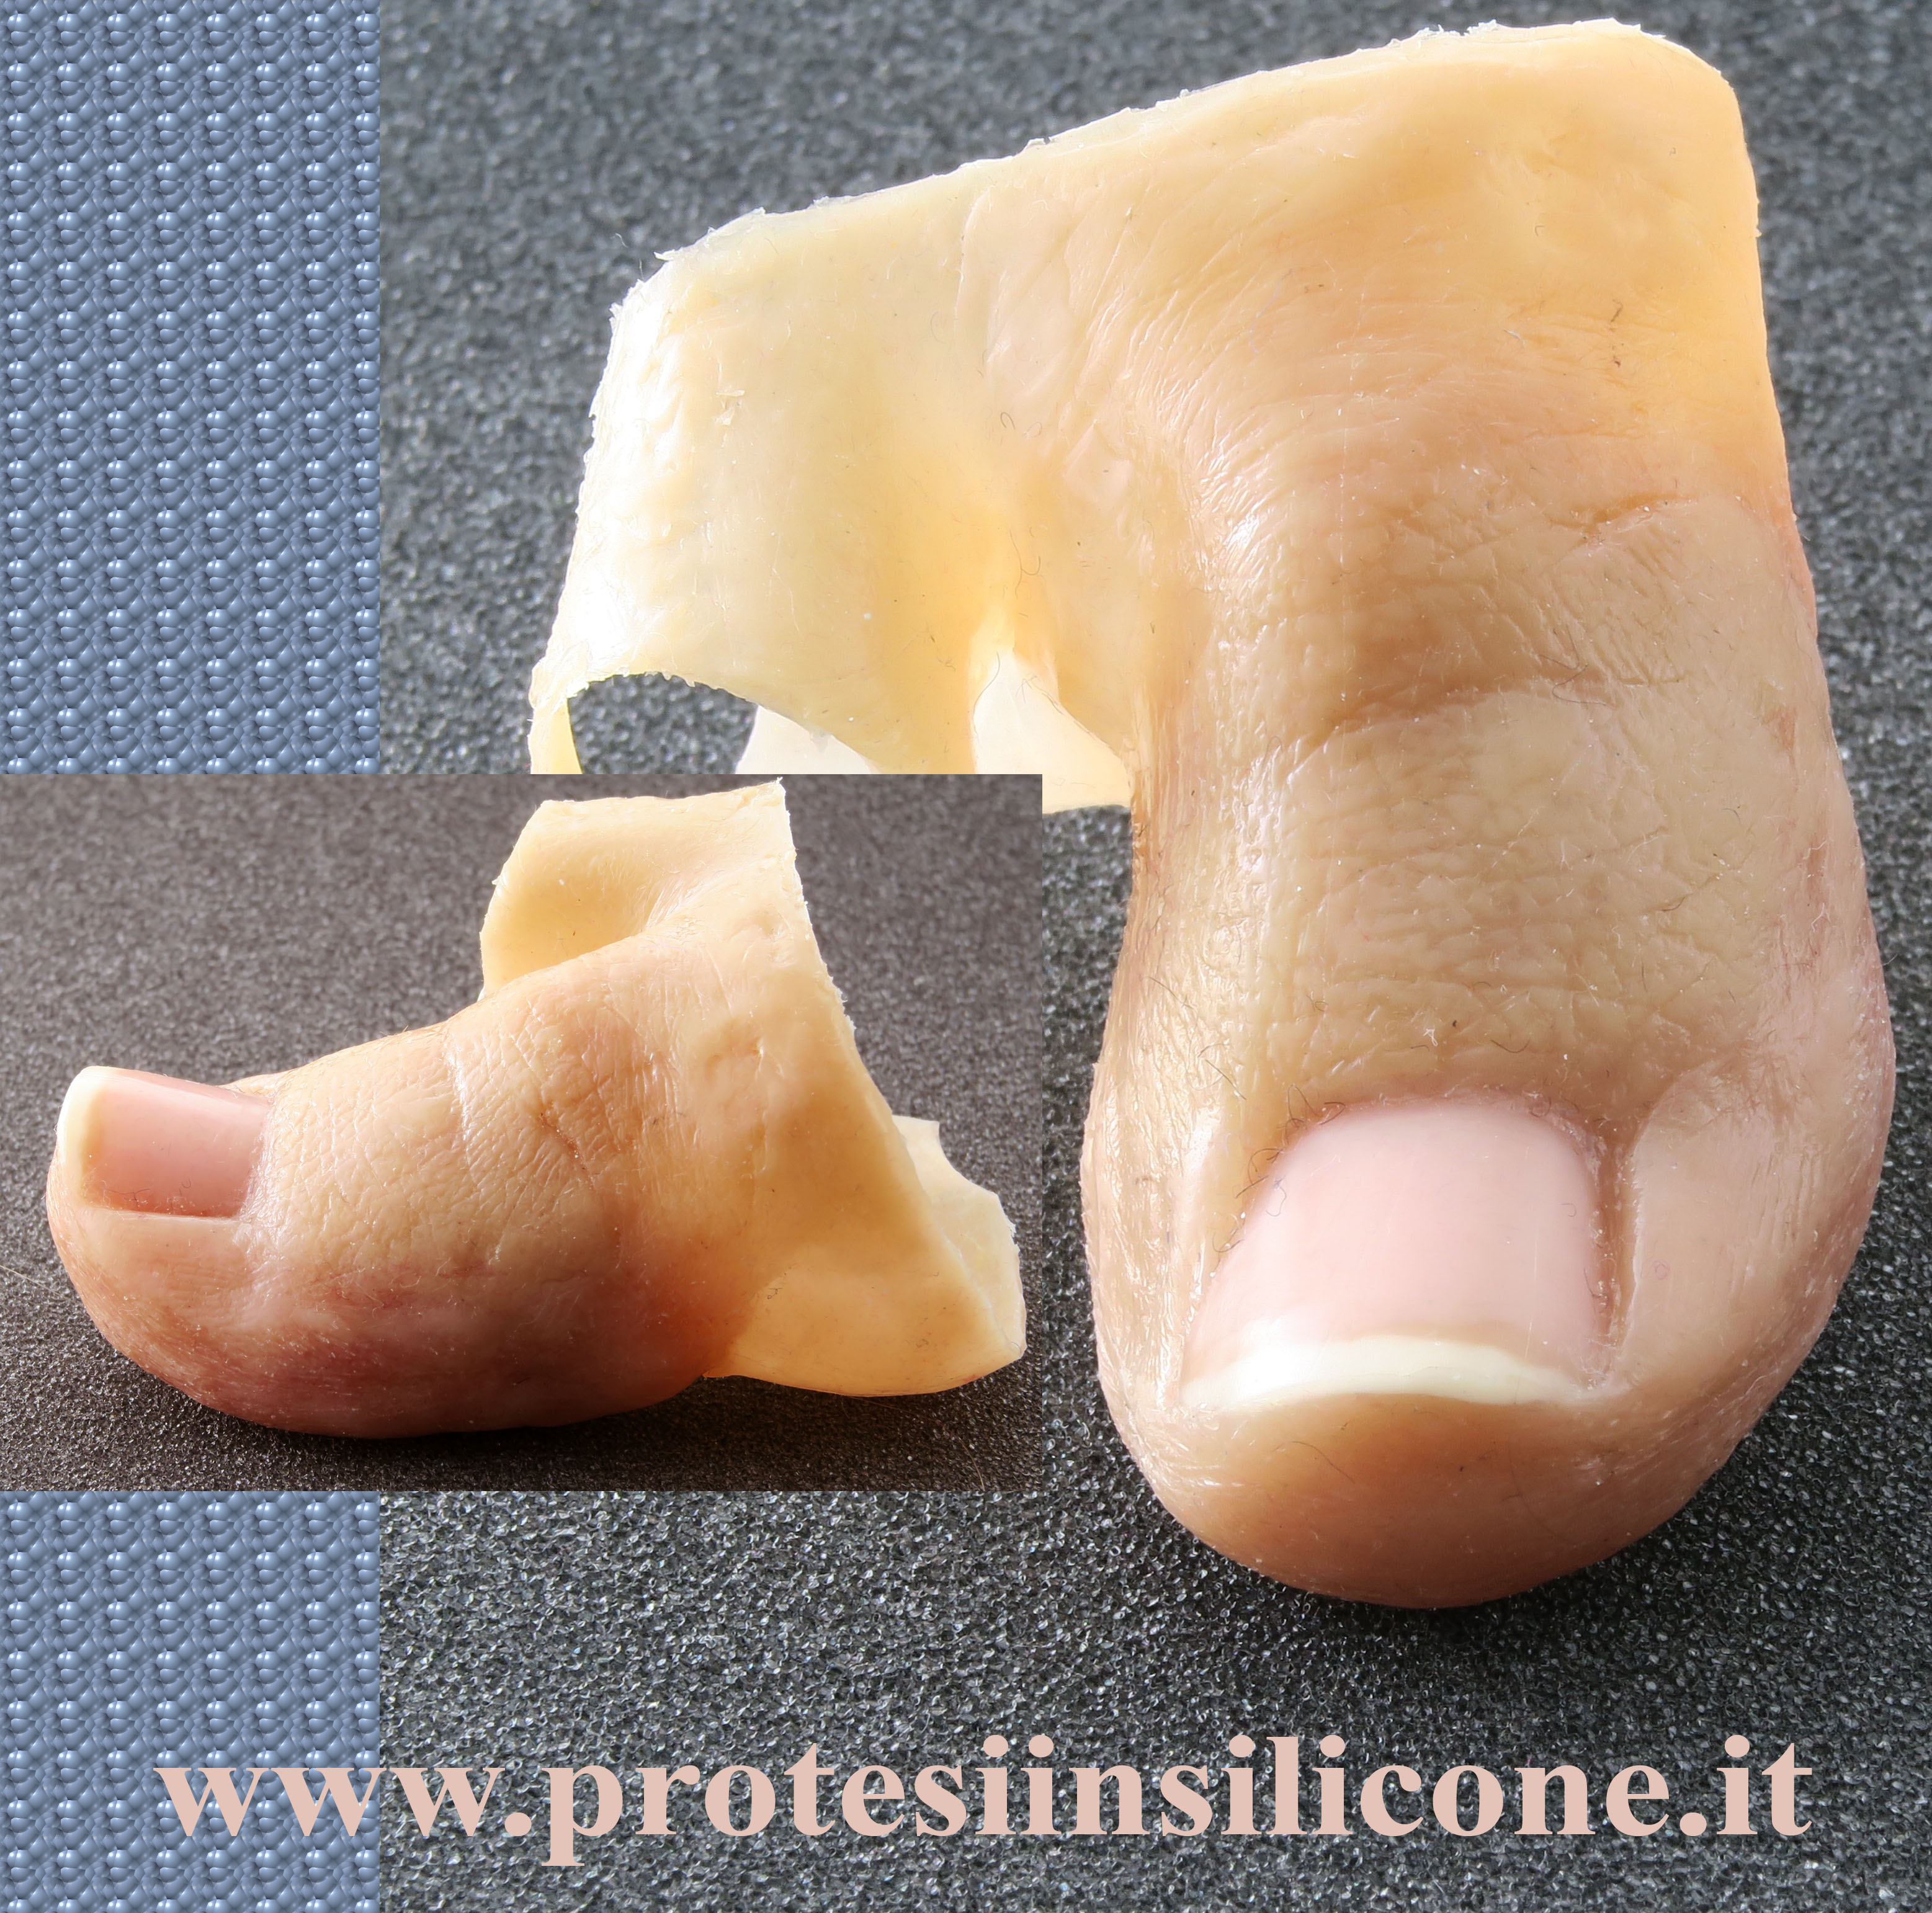 protesi per dito di piede, amputazioni in seguito a vasculopatie e diabete